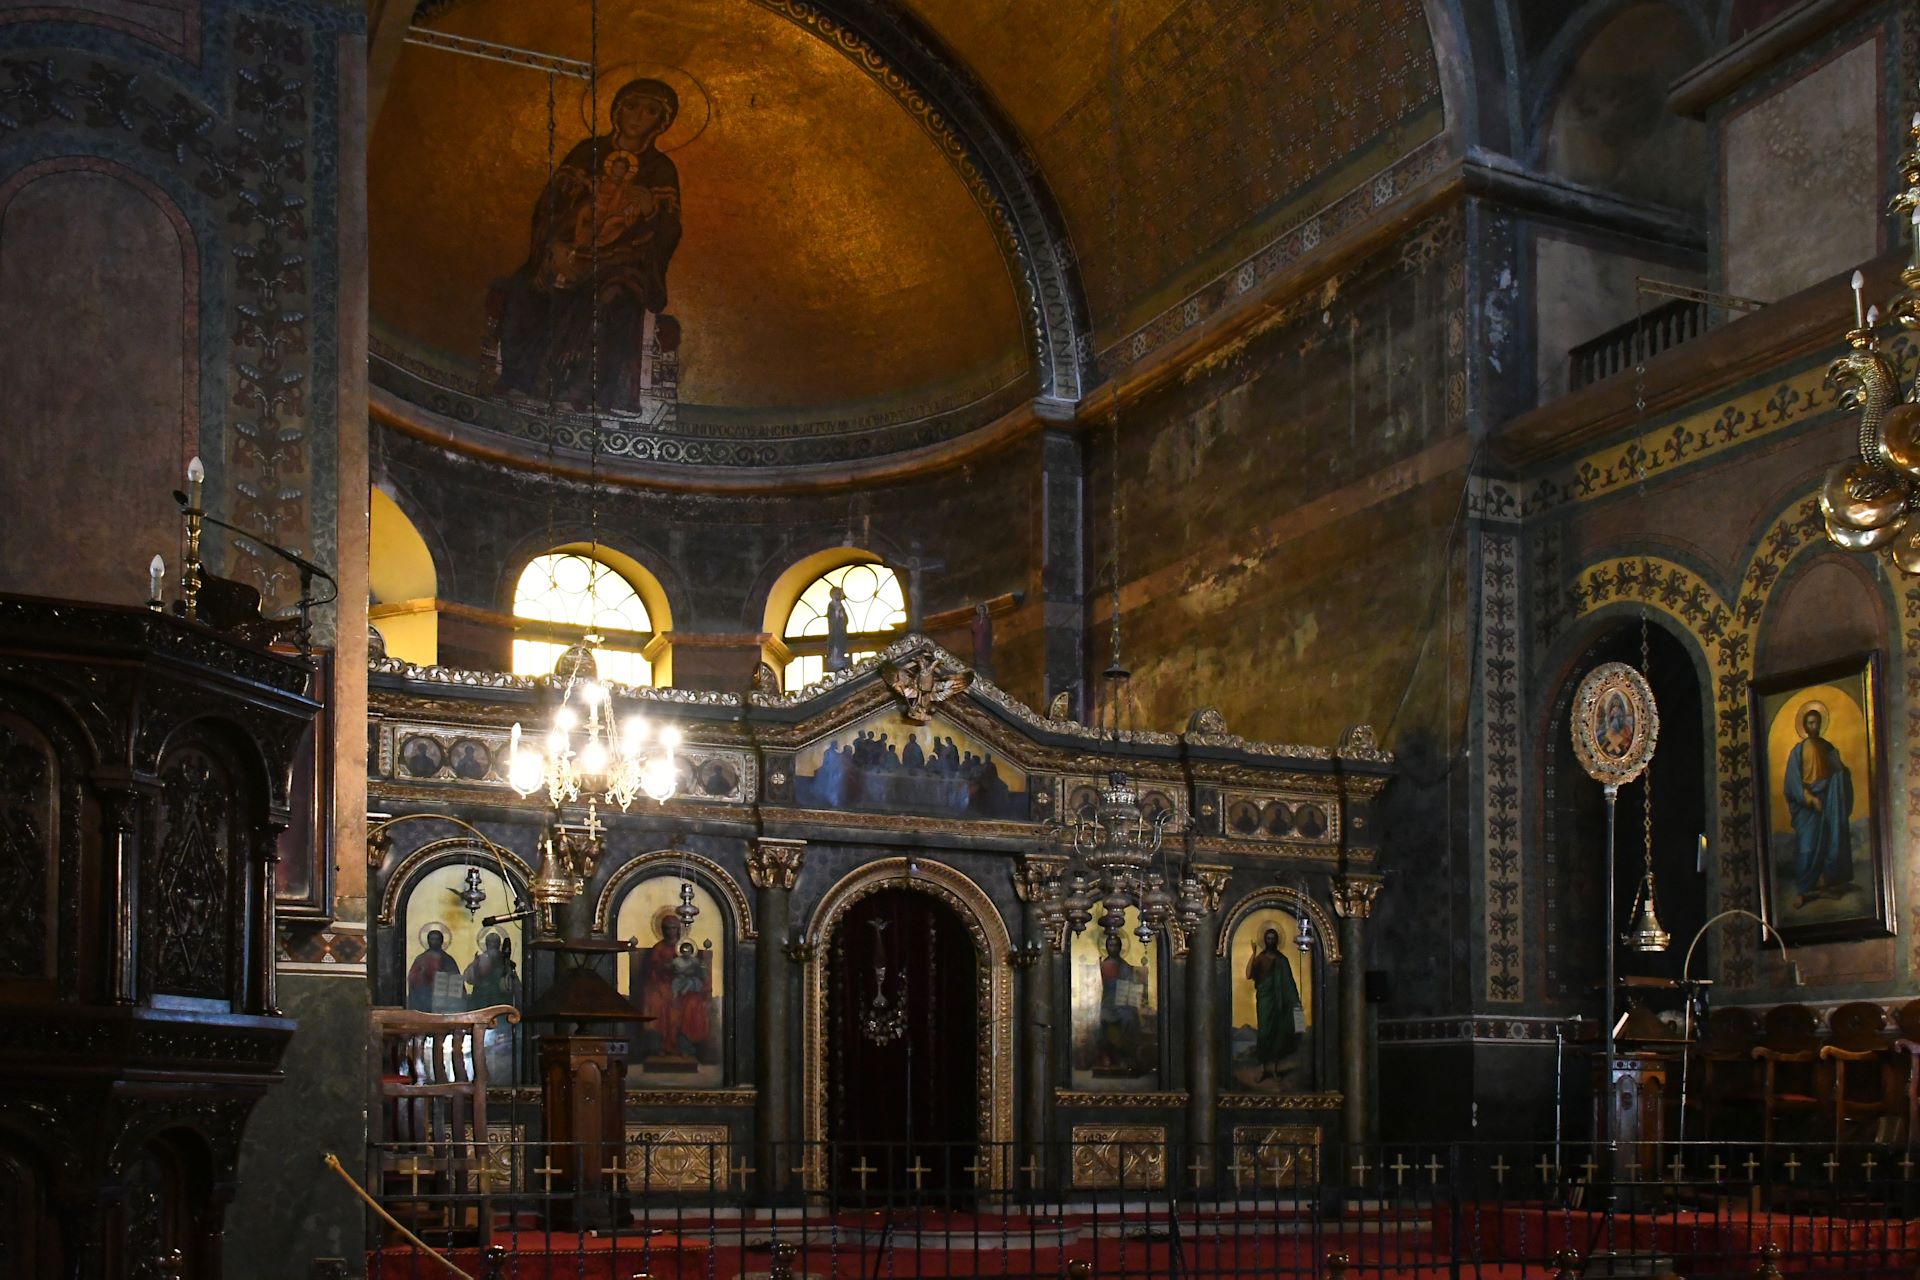 Hagia Sophia (Αγία Σοφία) (7. Jhdt.)